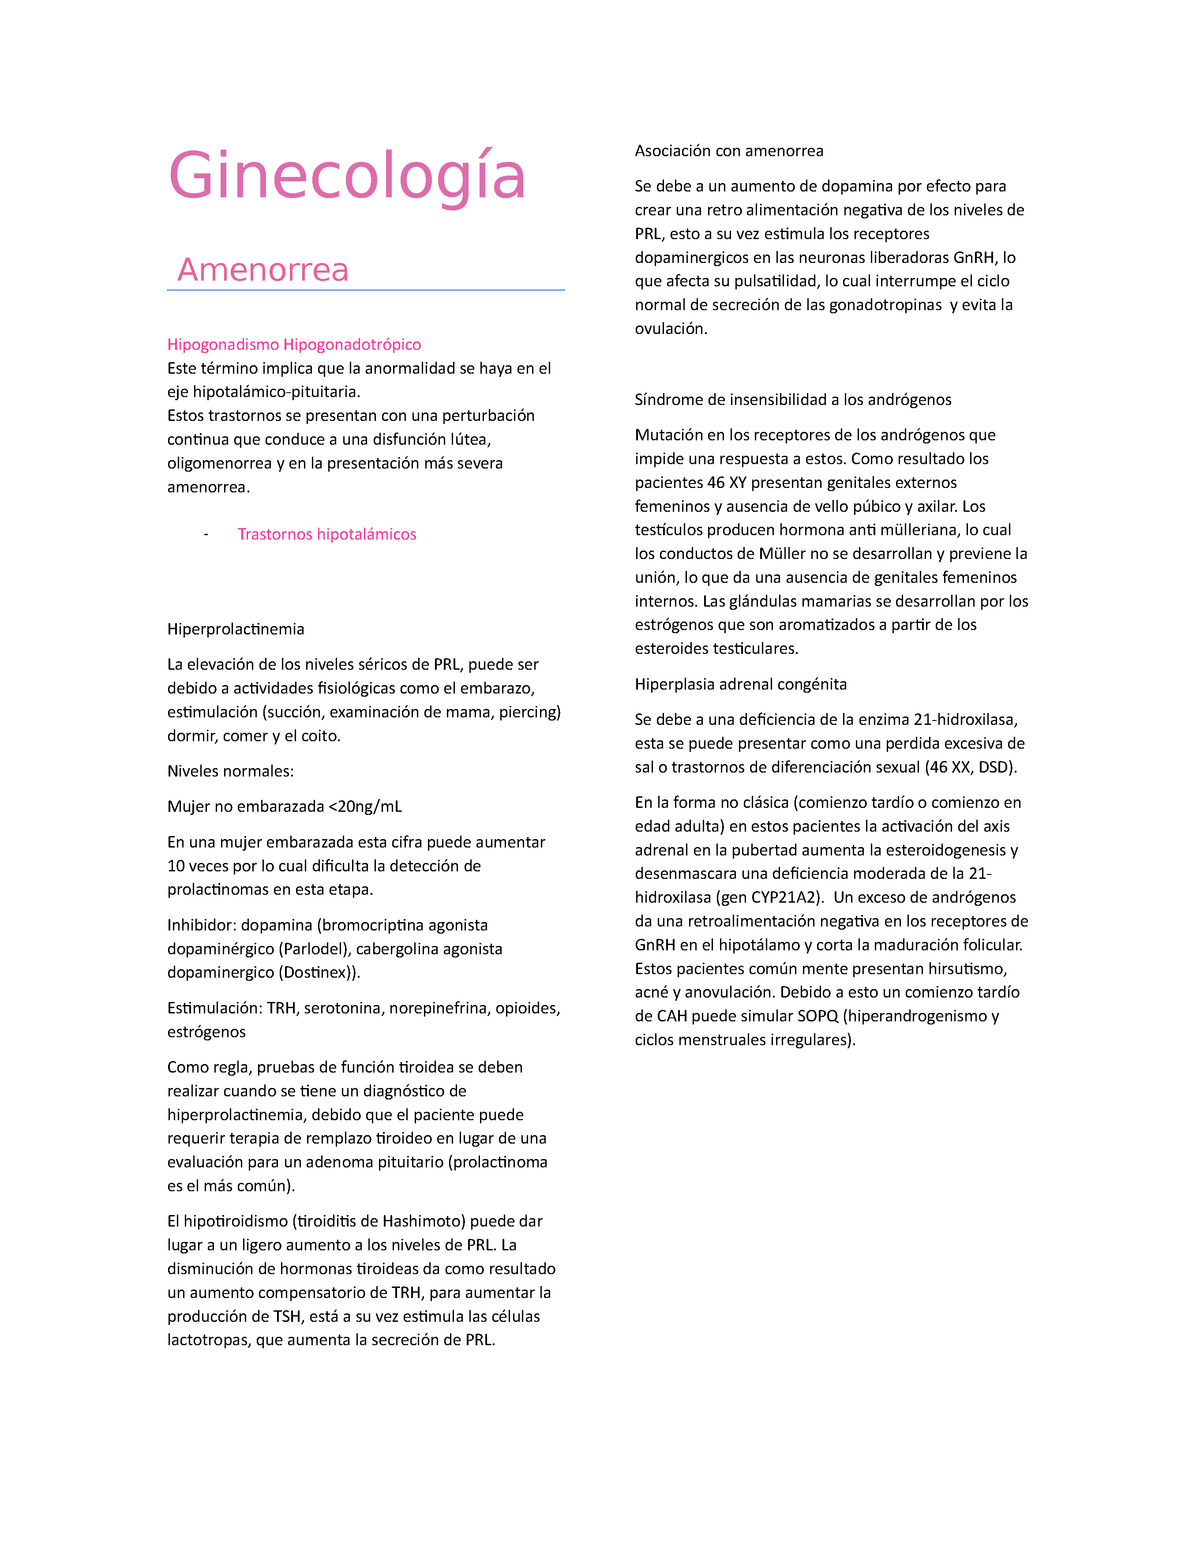 Resumenes De Ginecologia Resumenes De Ginecologia 1 C 4281